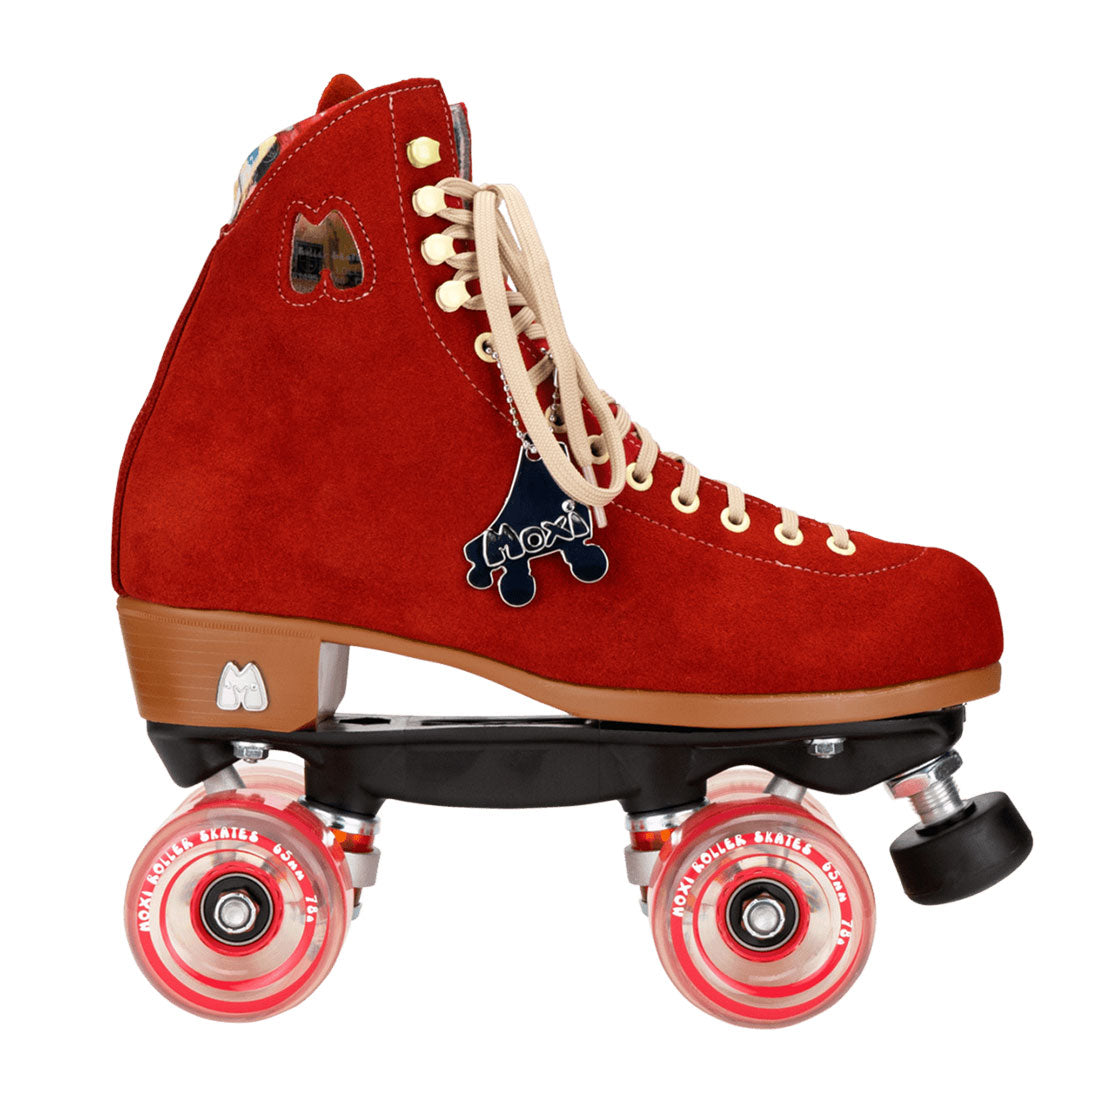 Moxi Lolly Skate - Poppy Red Roller Skates